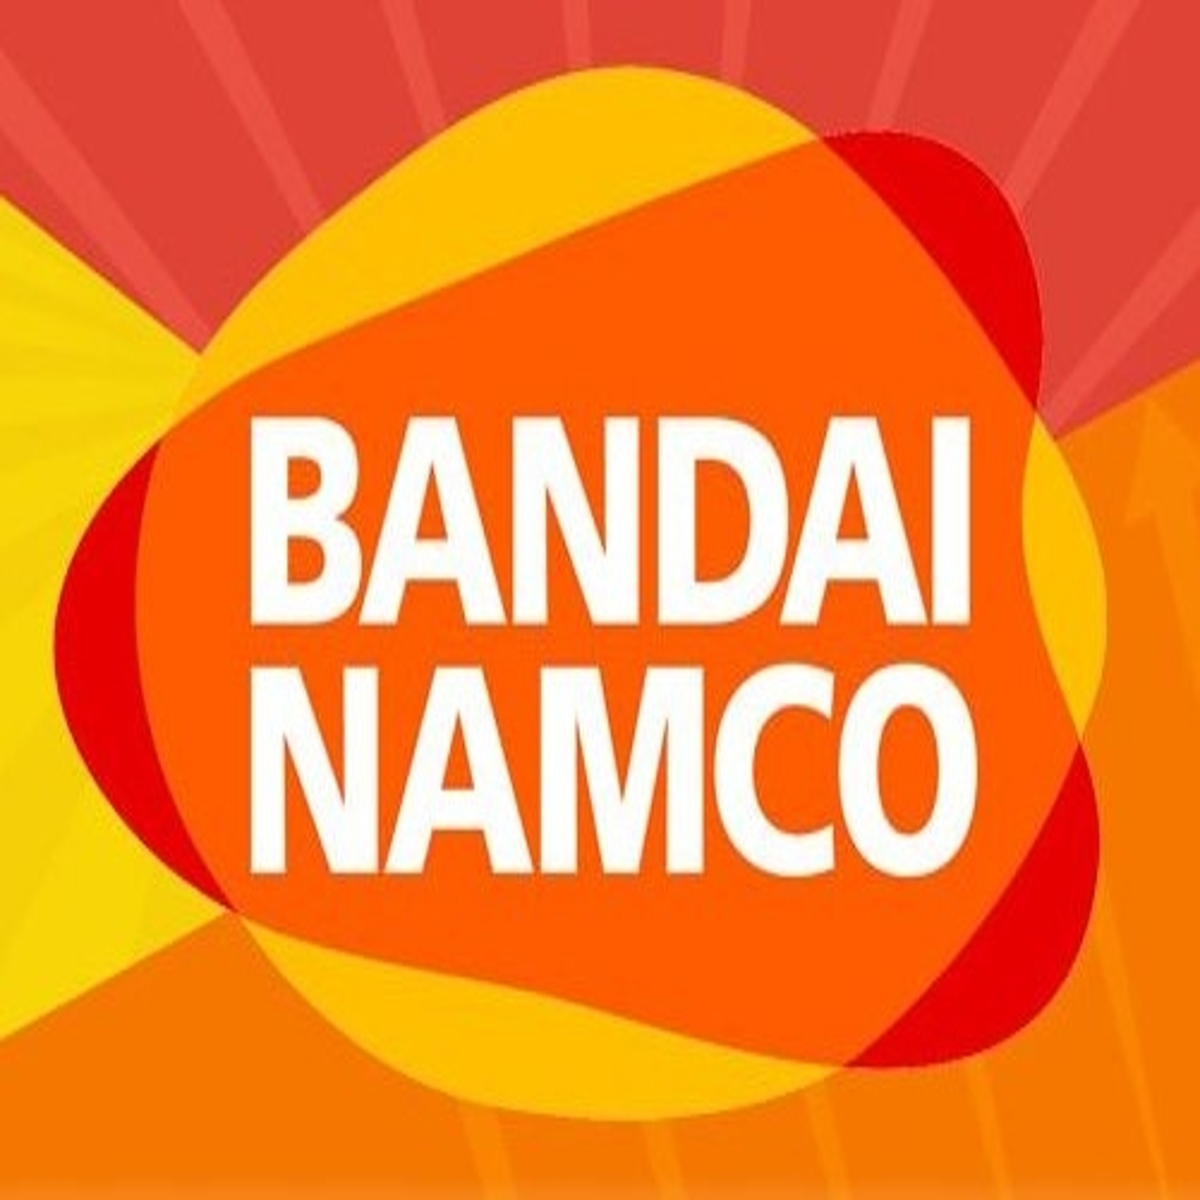 Bandai Namco promete revelar novos jogos durante sua apresentação